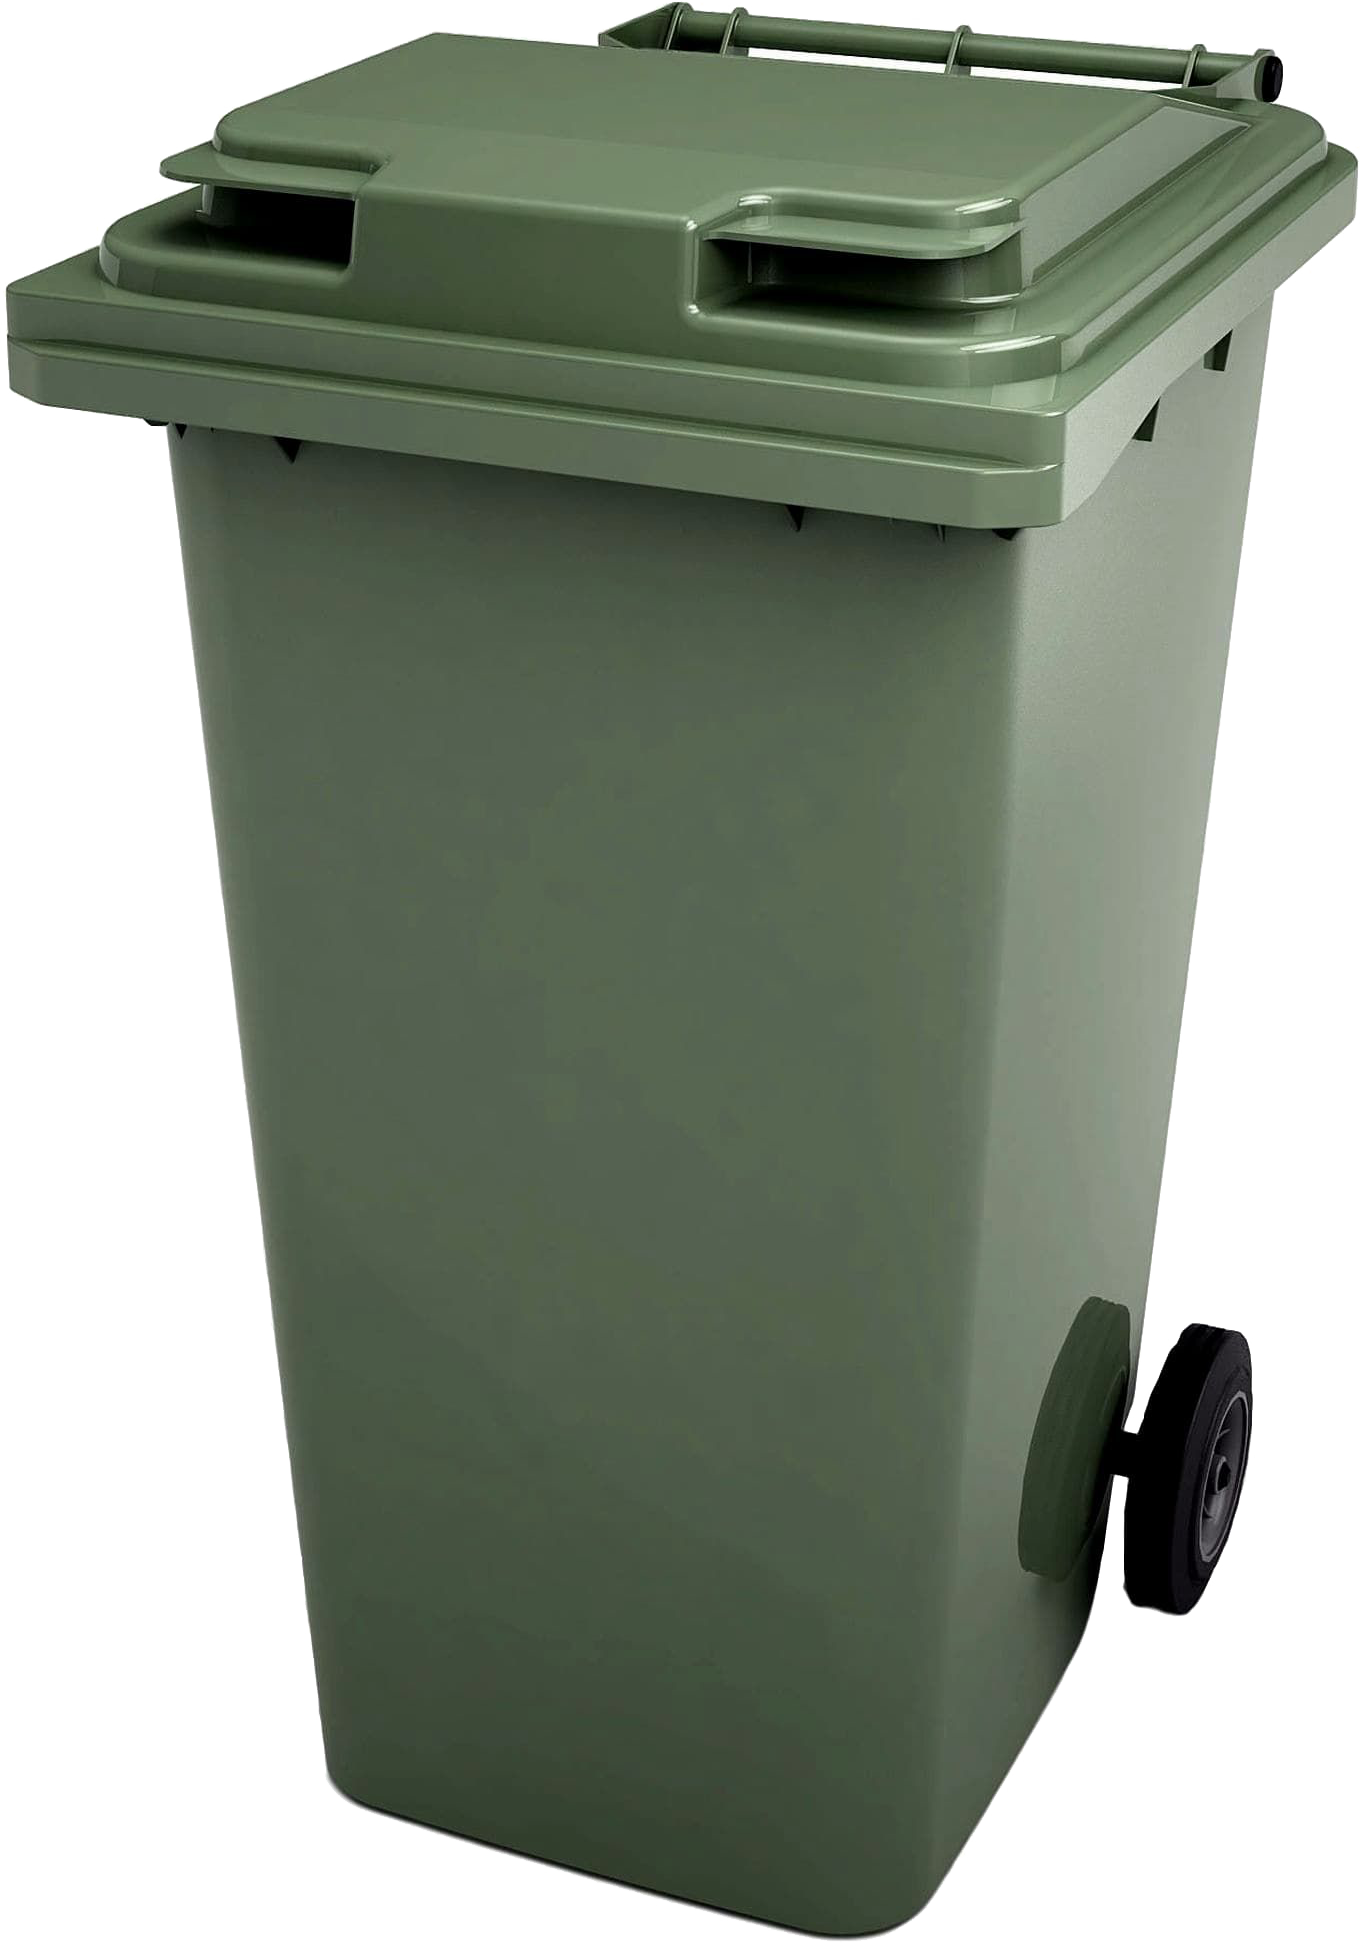 Бак 240 л. Передвижной мусорный контейнер 240л арт.24.с29. Контейнер для ТБО 120л зеленый Алеана. Контейнер для ТБО 240л зеленый. Мусорный контейнер МКТ-240.